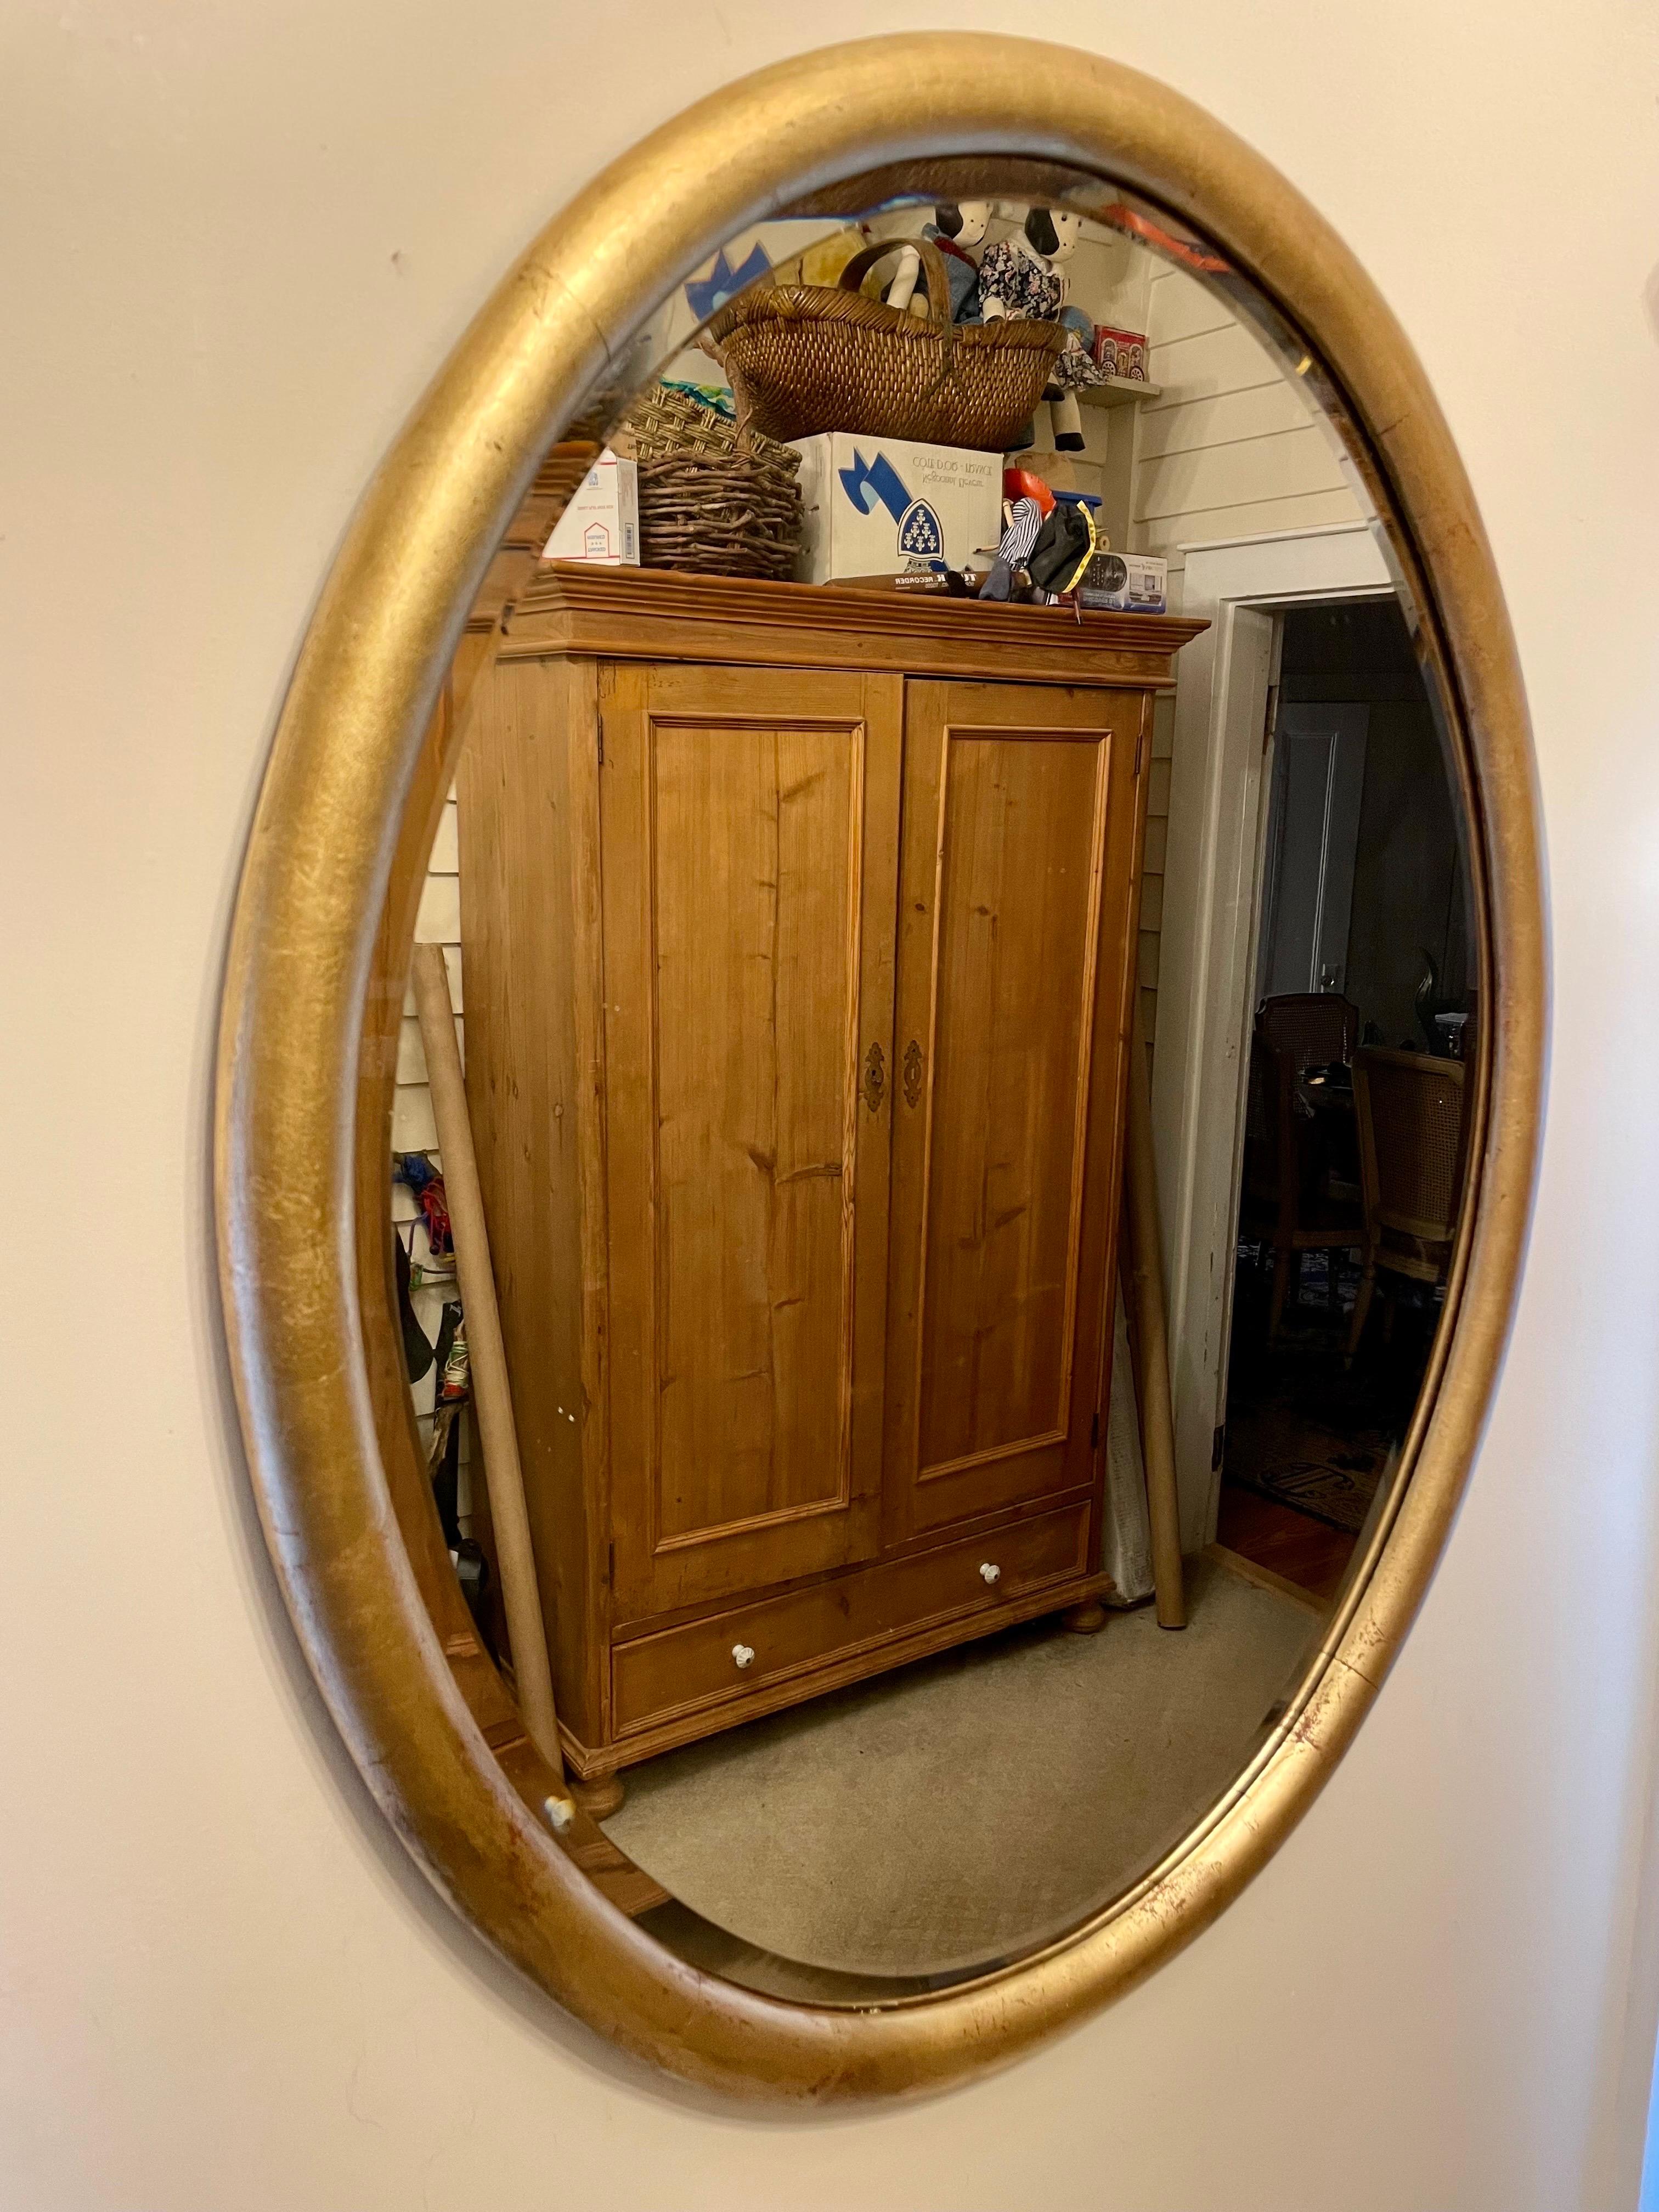 Miroir ovale ancien en bois doré. Le miroir biseauté d'origine présente de superbes marques d'usure et de vieillesse dues à des années d'utilisation. Grande taille, mesure 30